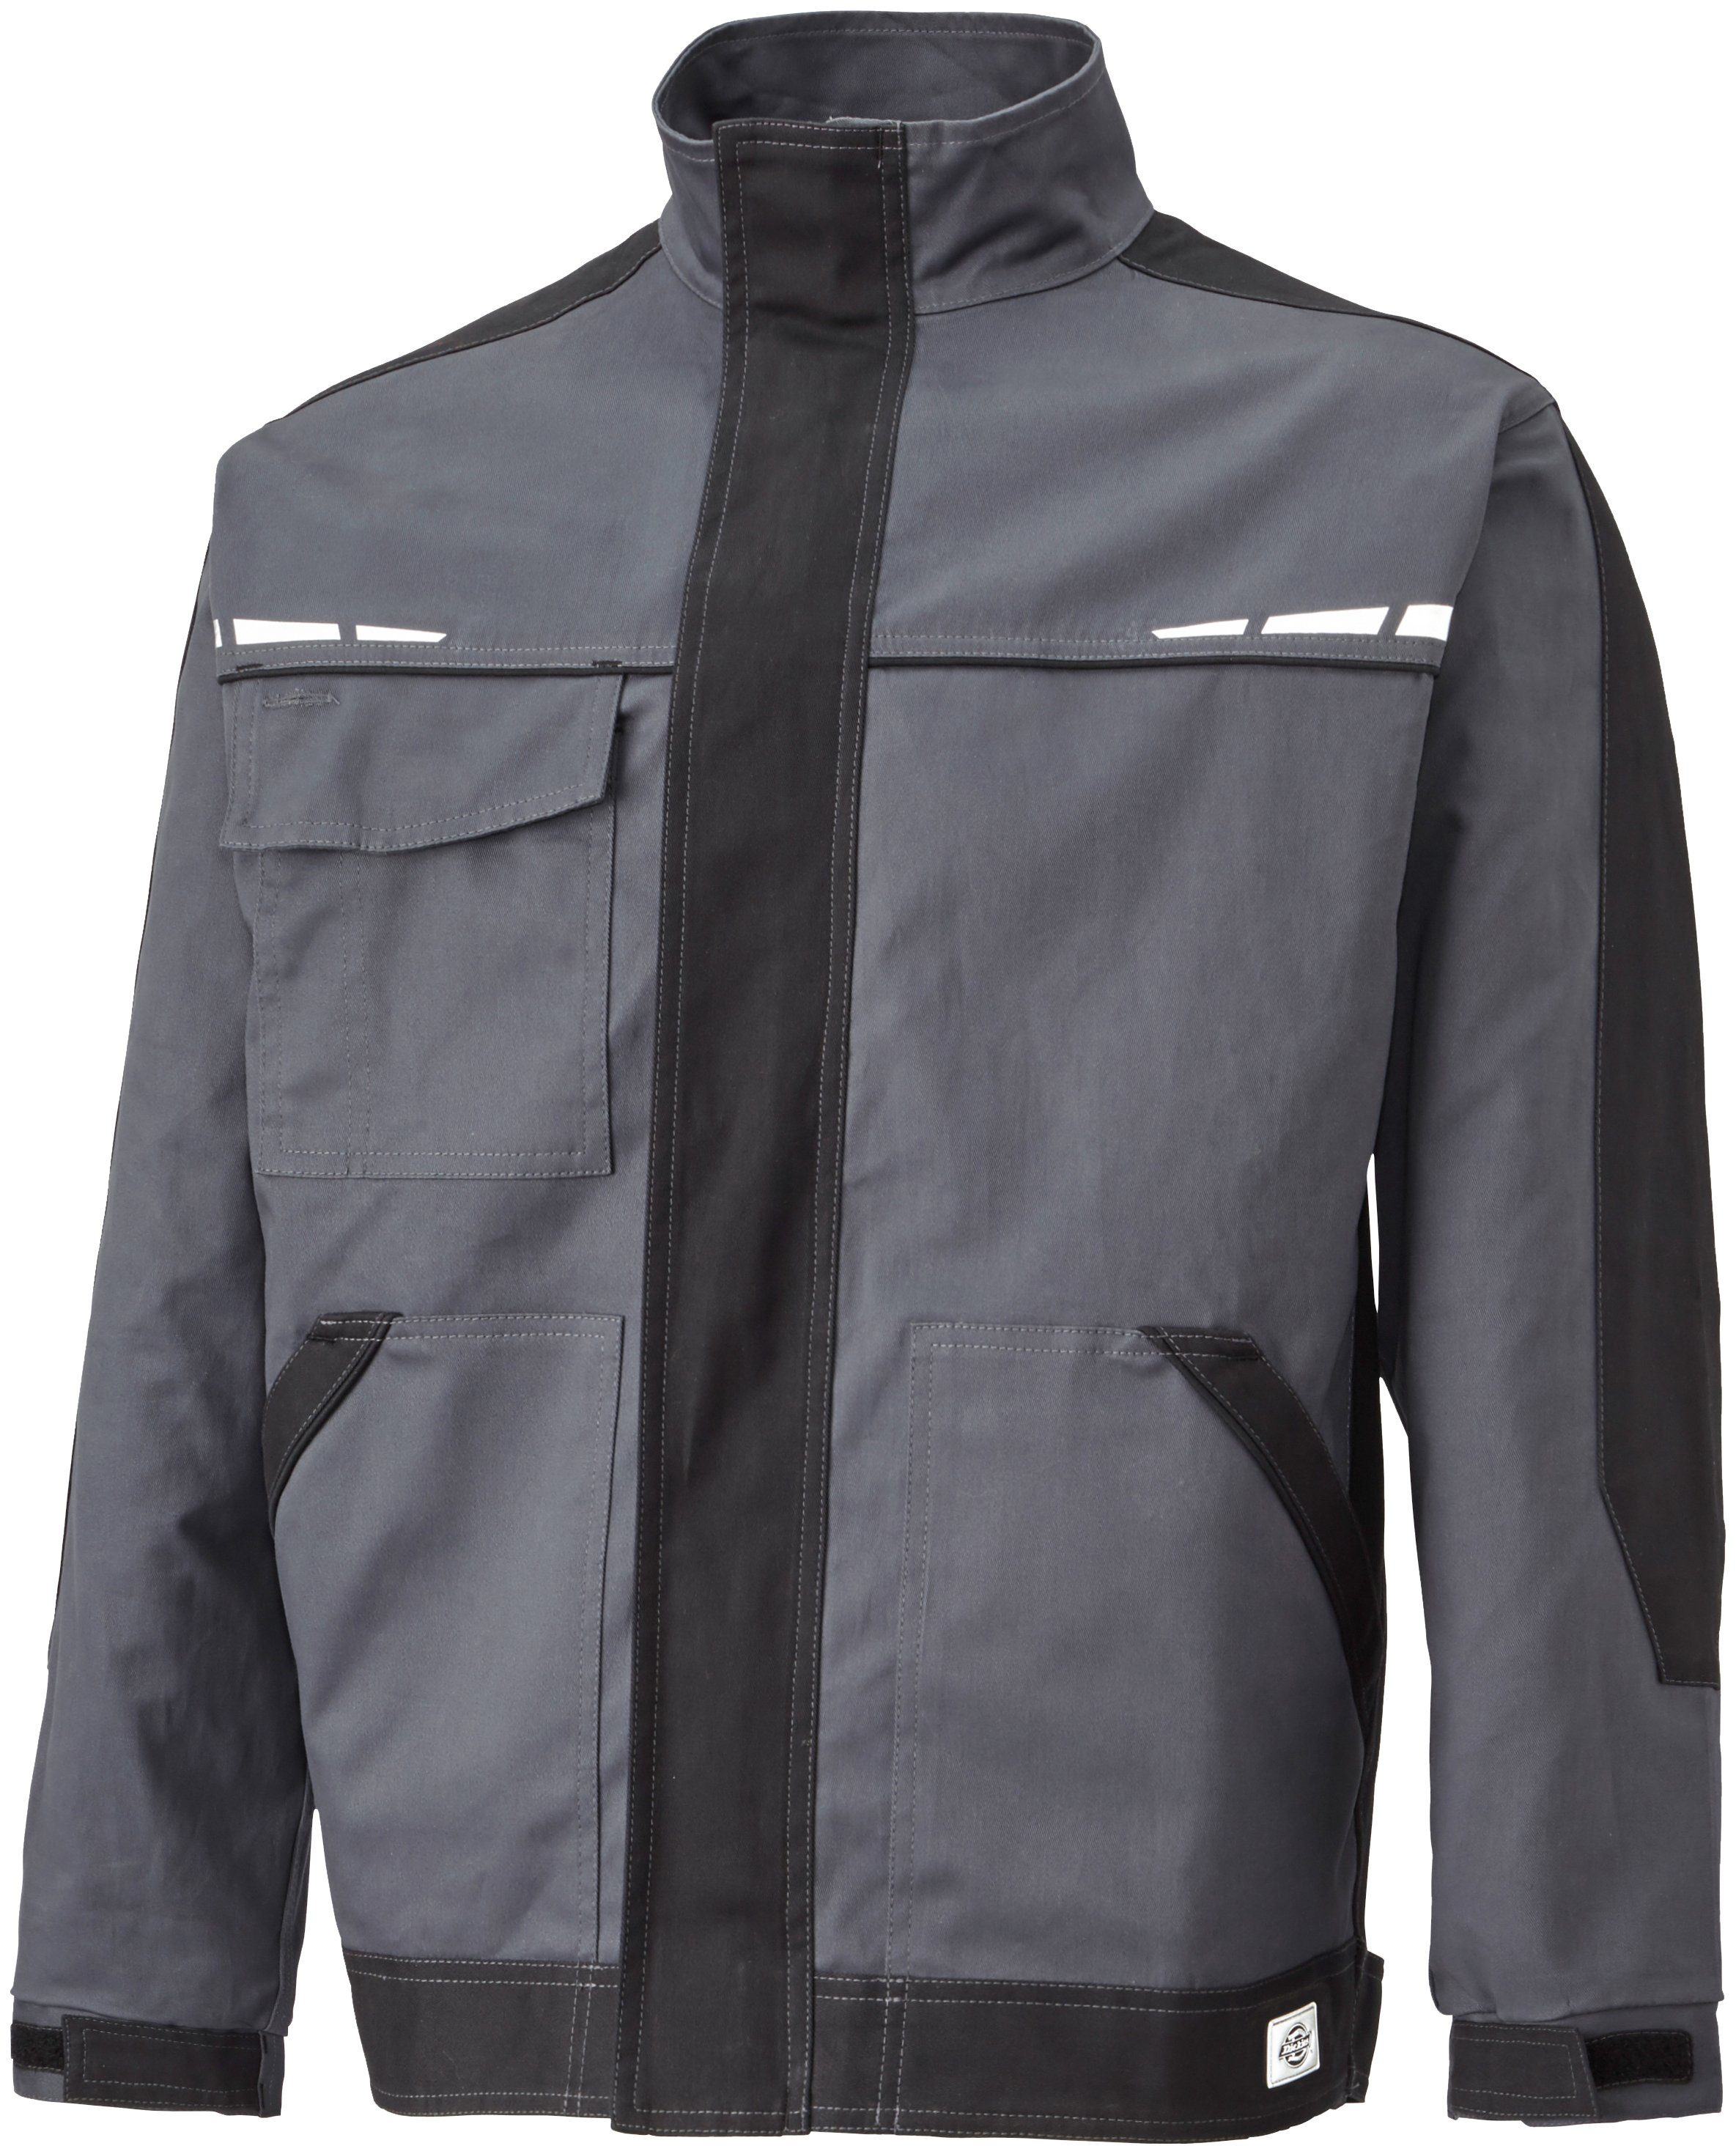 Designelemente GDT Arbeitsjacke Reflektierende Dickies Premium grau-schwarz